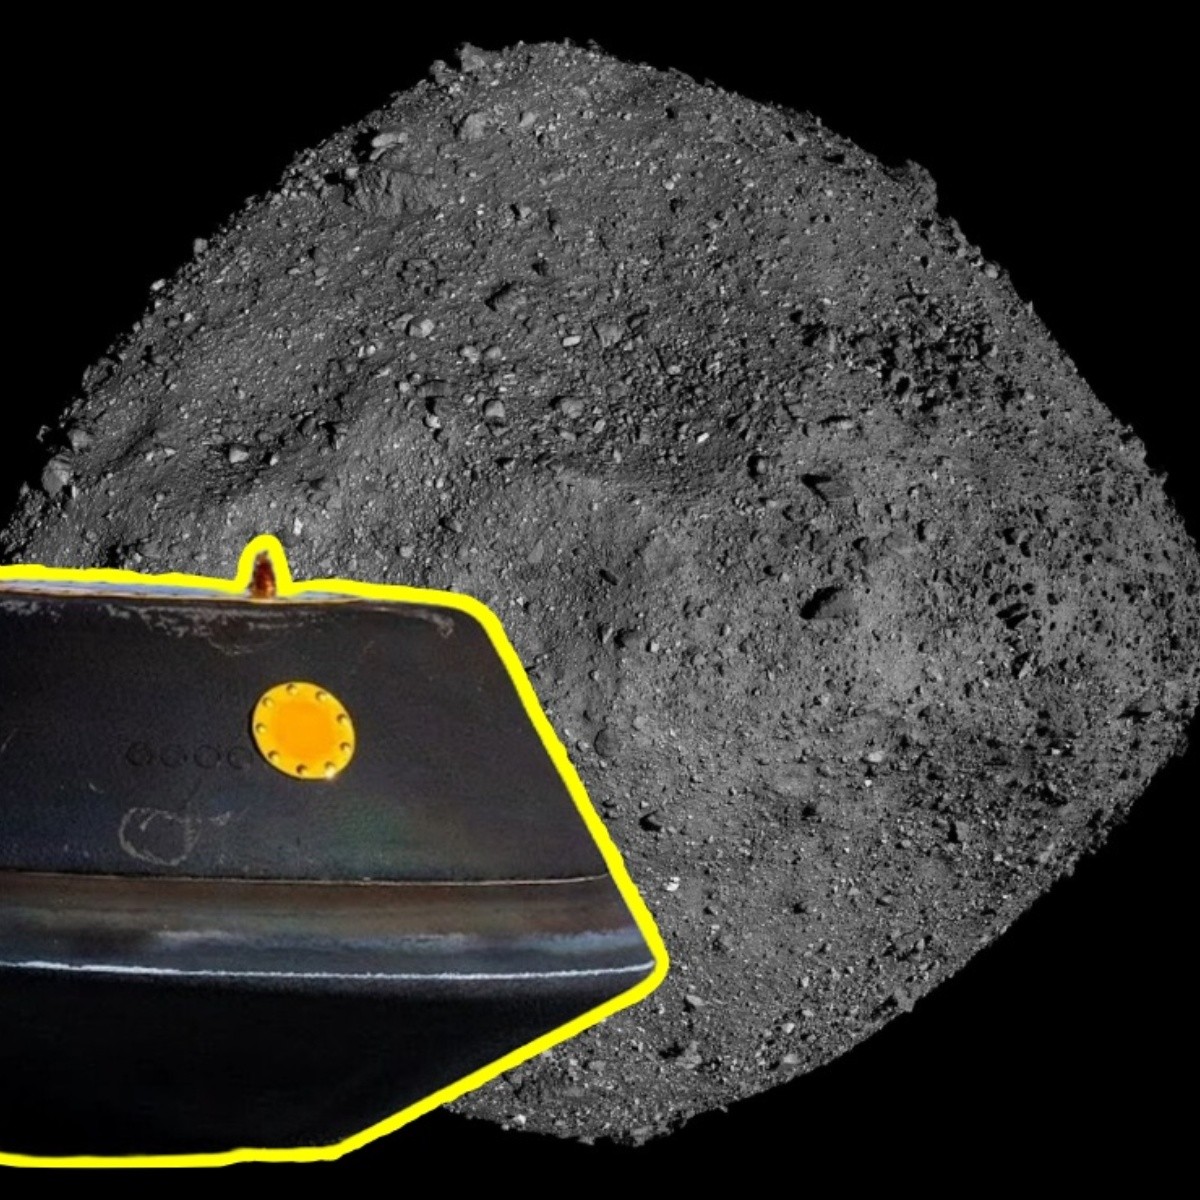 la nasa accede a las muestras extraterrestres del asteroide bennu traídas por osiris-rex